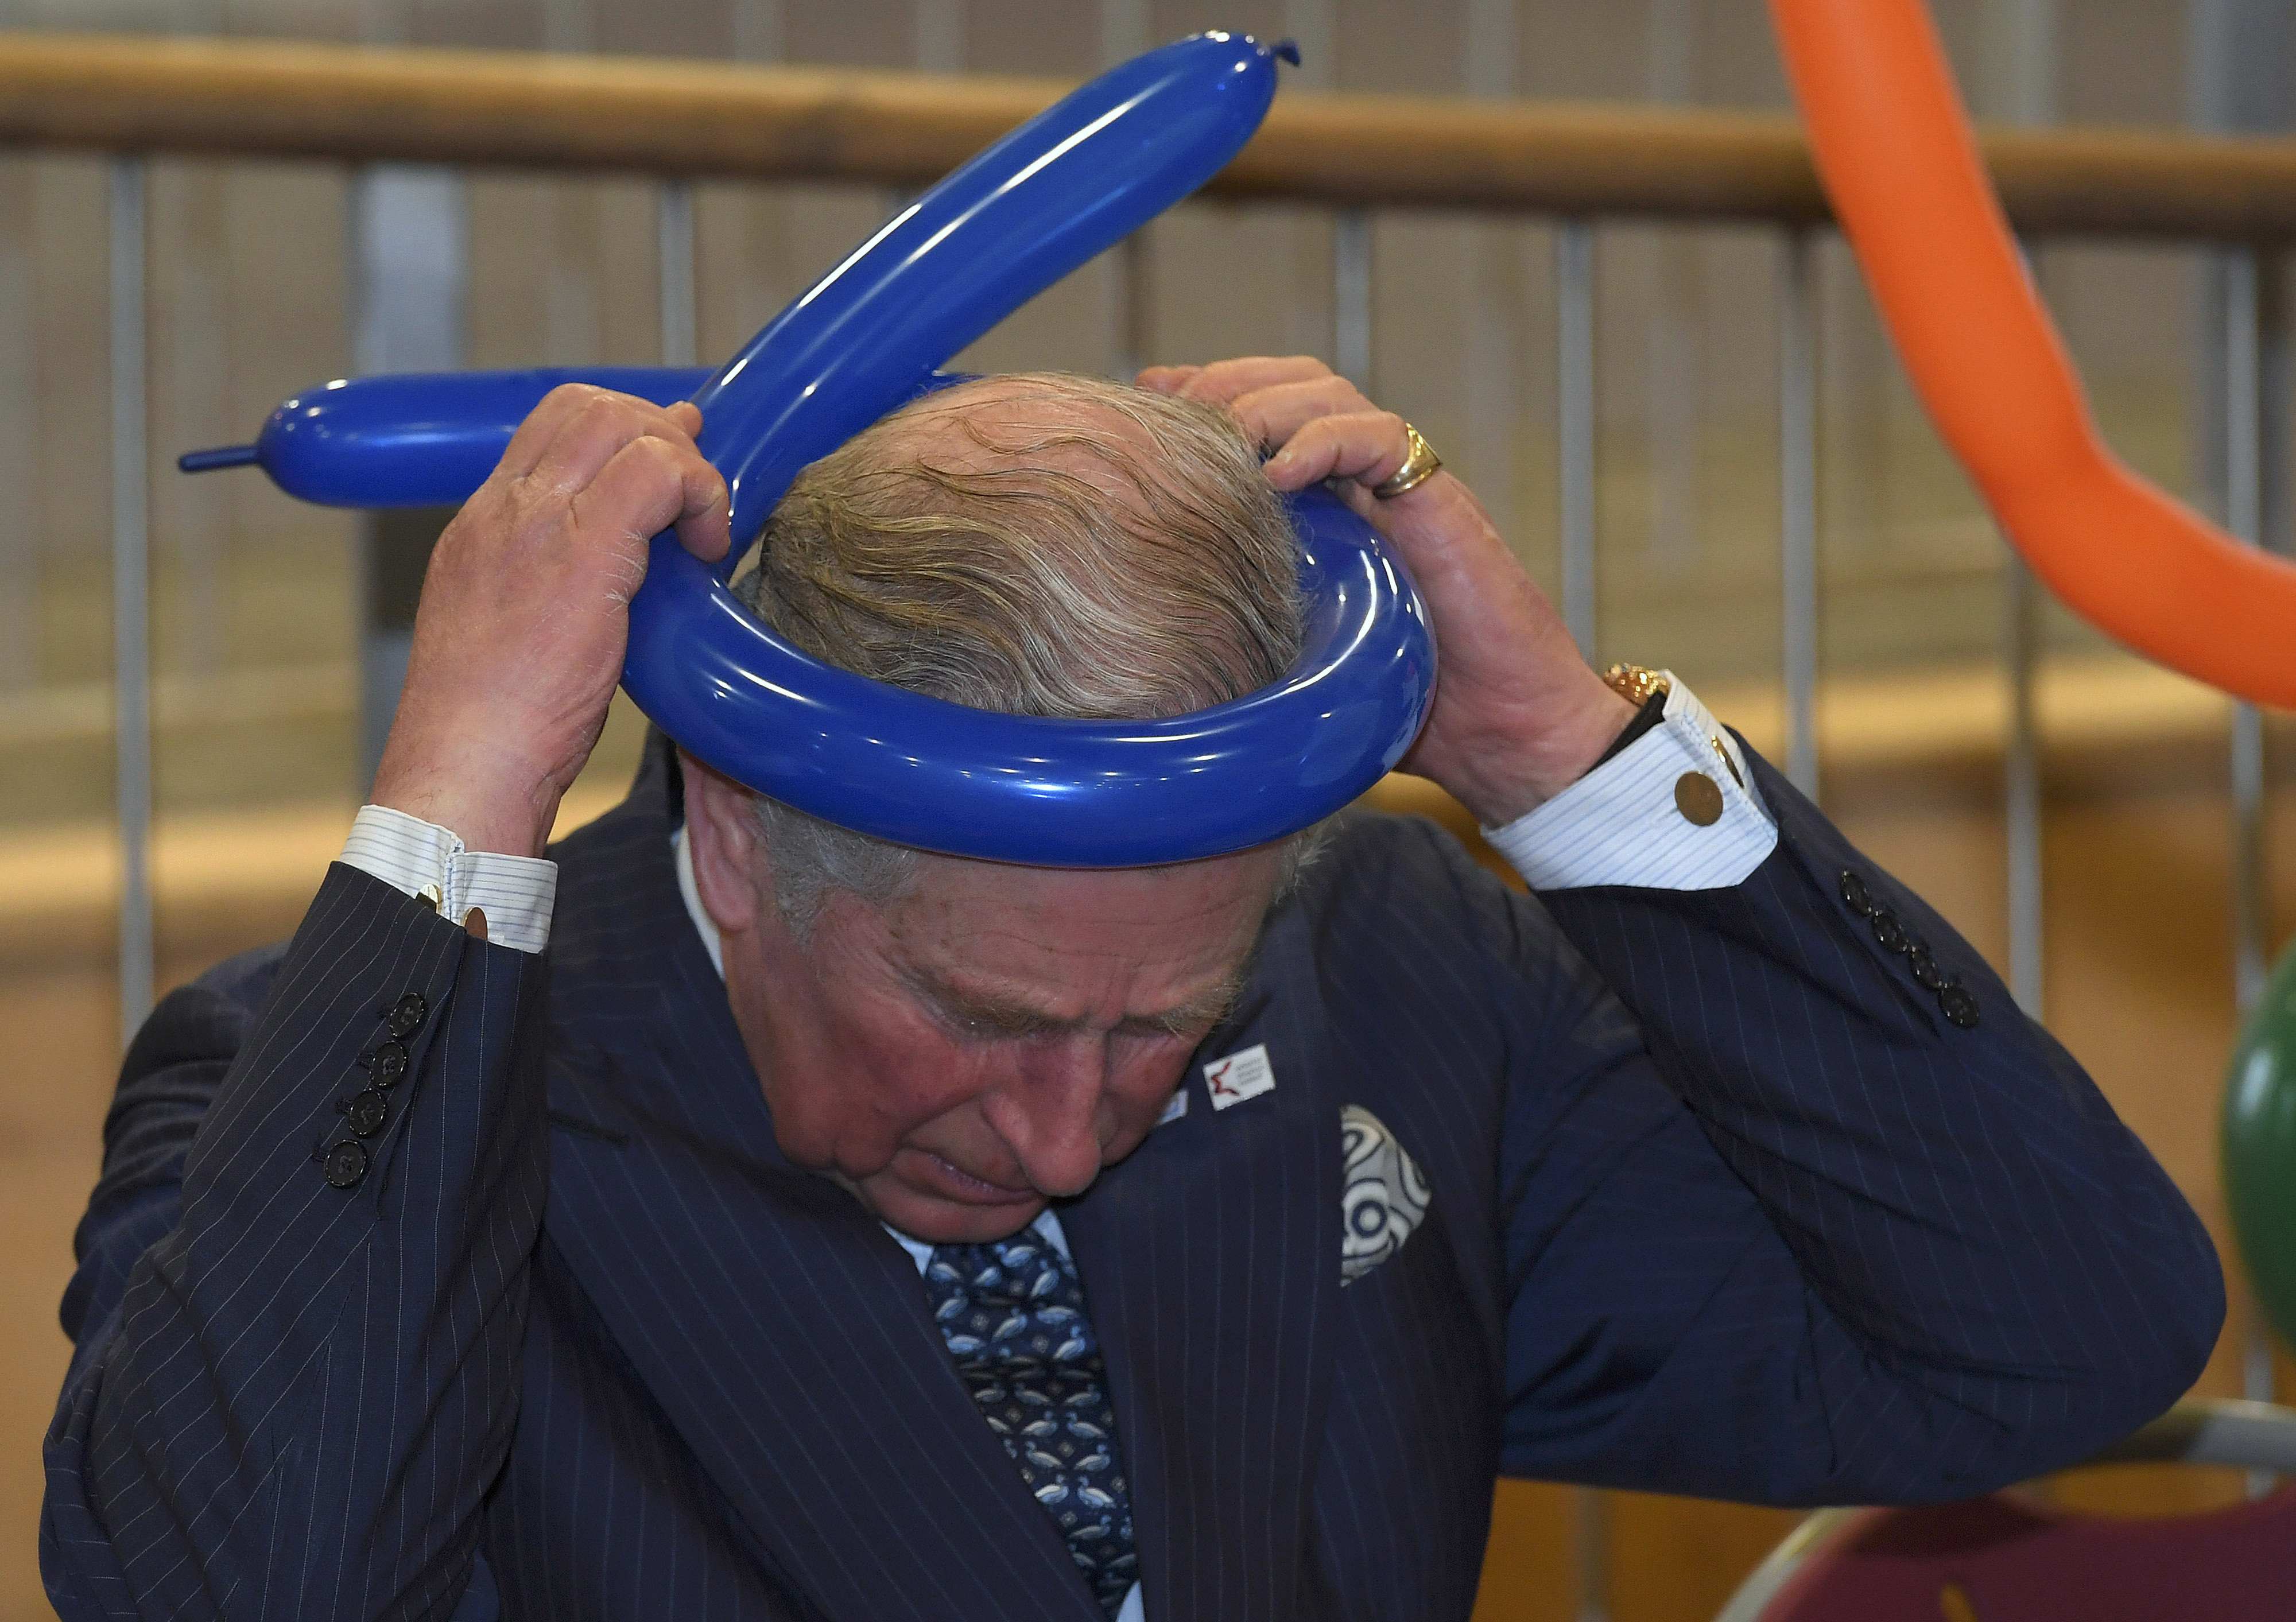 الأمير تشارلز يضع بالونه على رأسه خلال زياته لكلية يفنيه شمال لندن